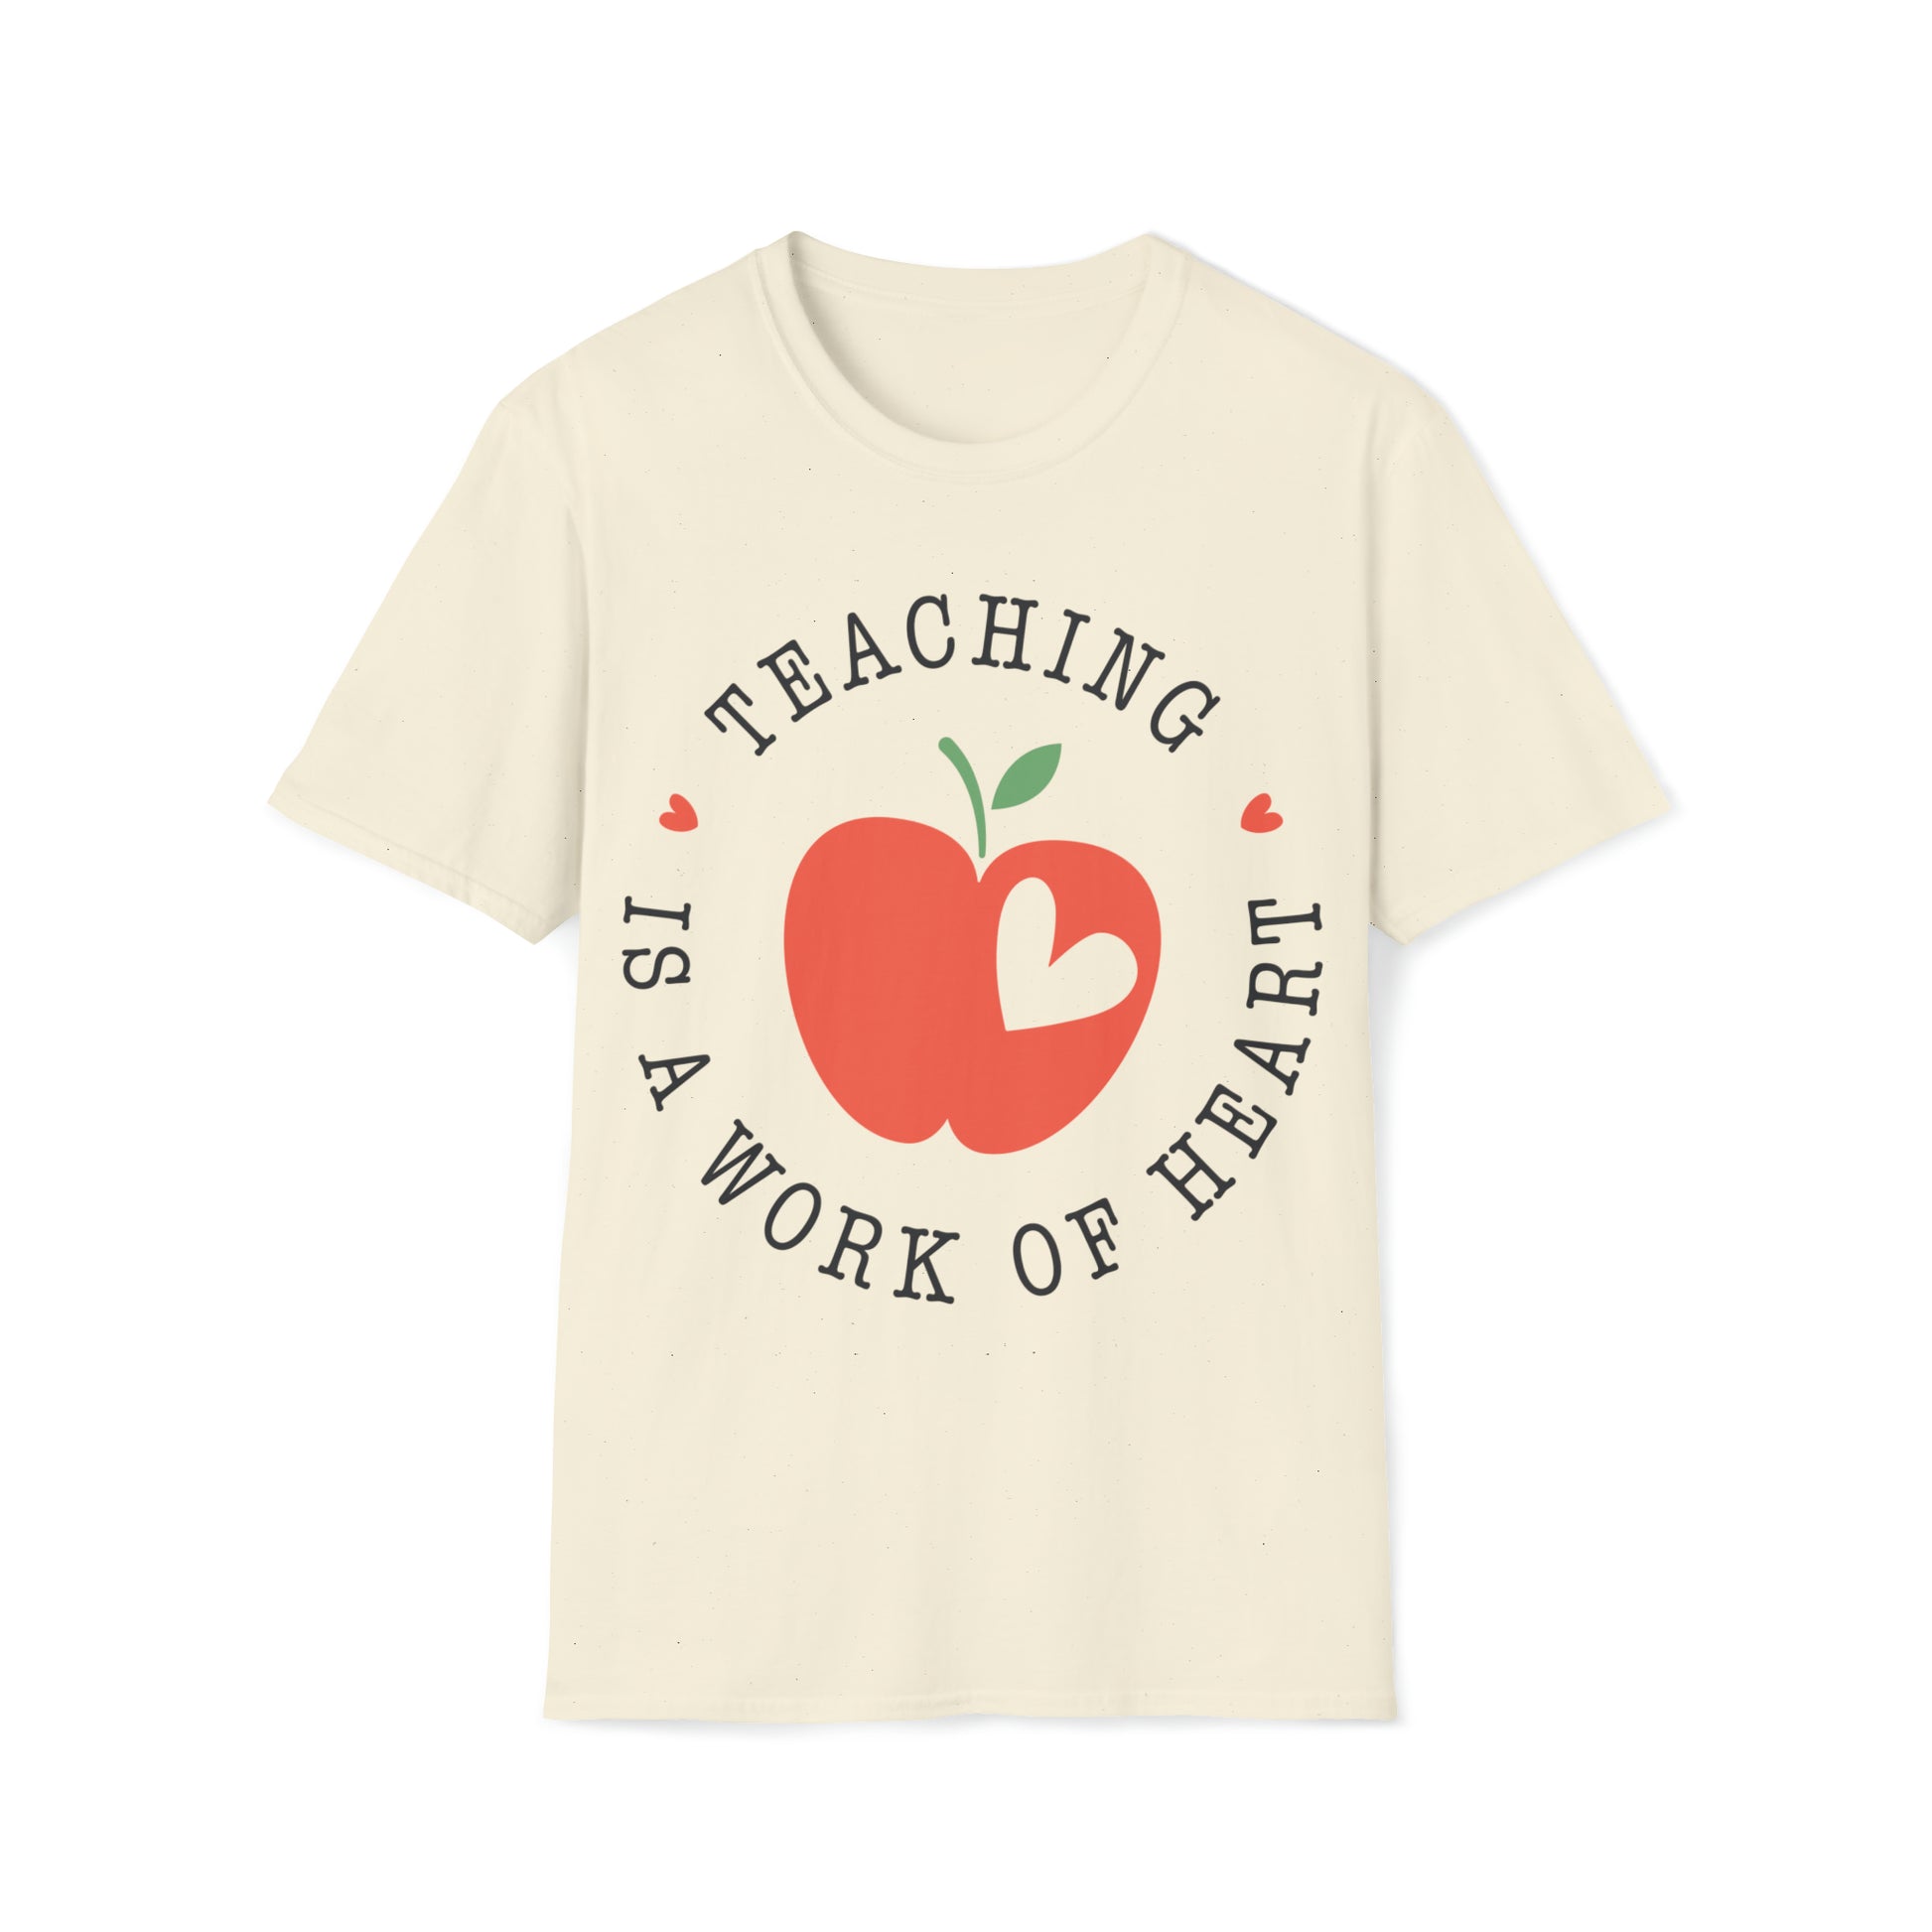 Teaching is a Work of Heart Shirt for Teachers